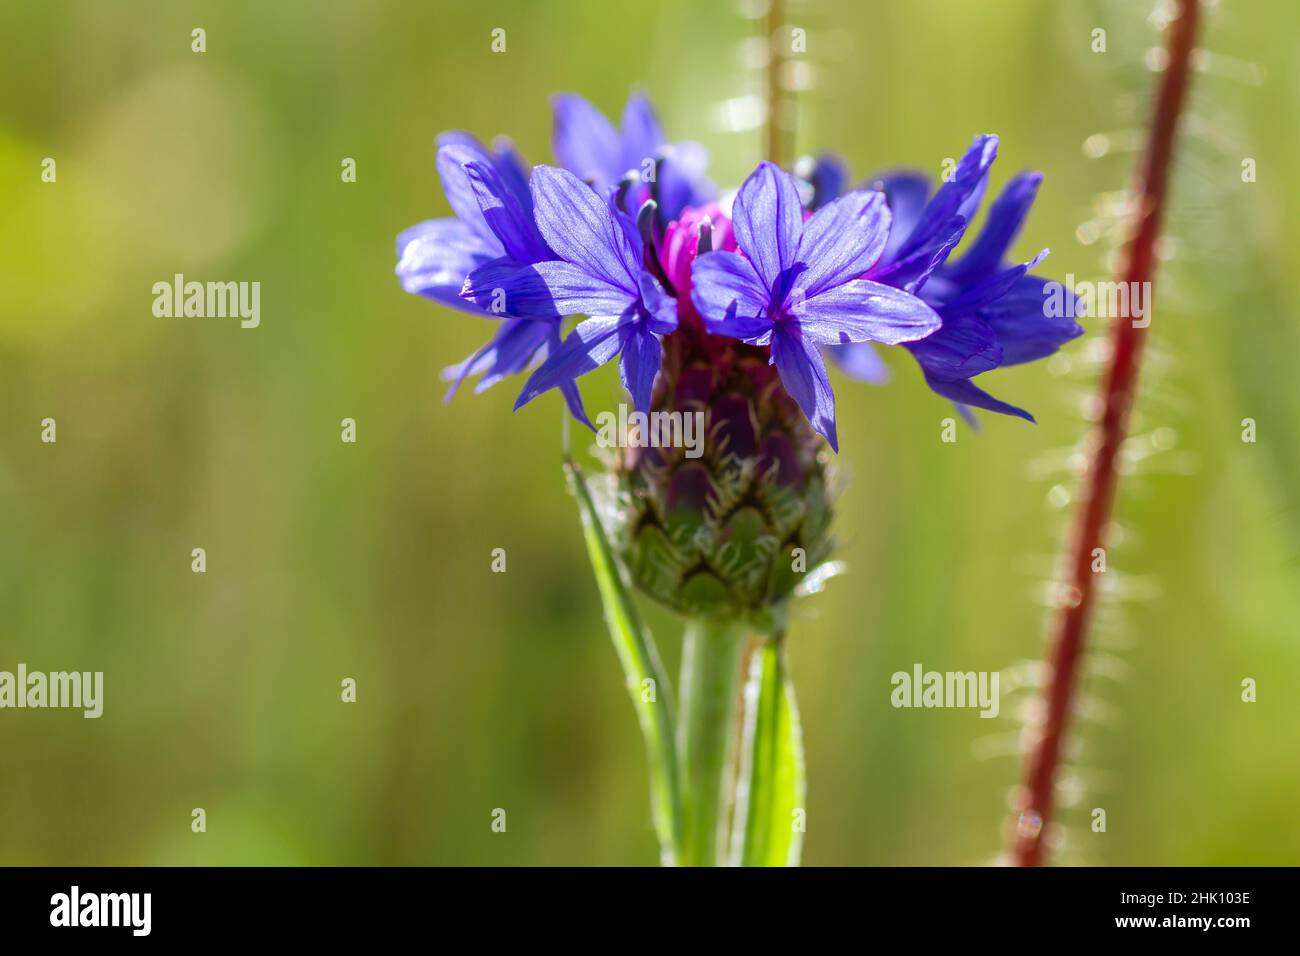 Bouton de baccalauréat (Centaurea cyanus) fleur bleue purplish floraison Banque D'Images